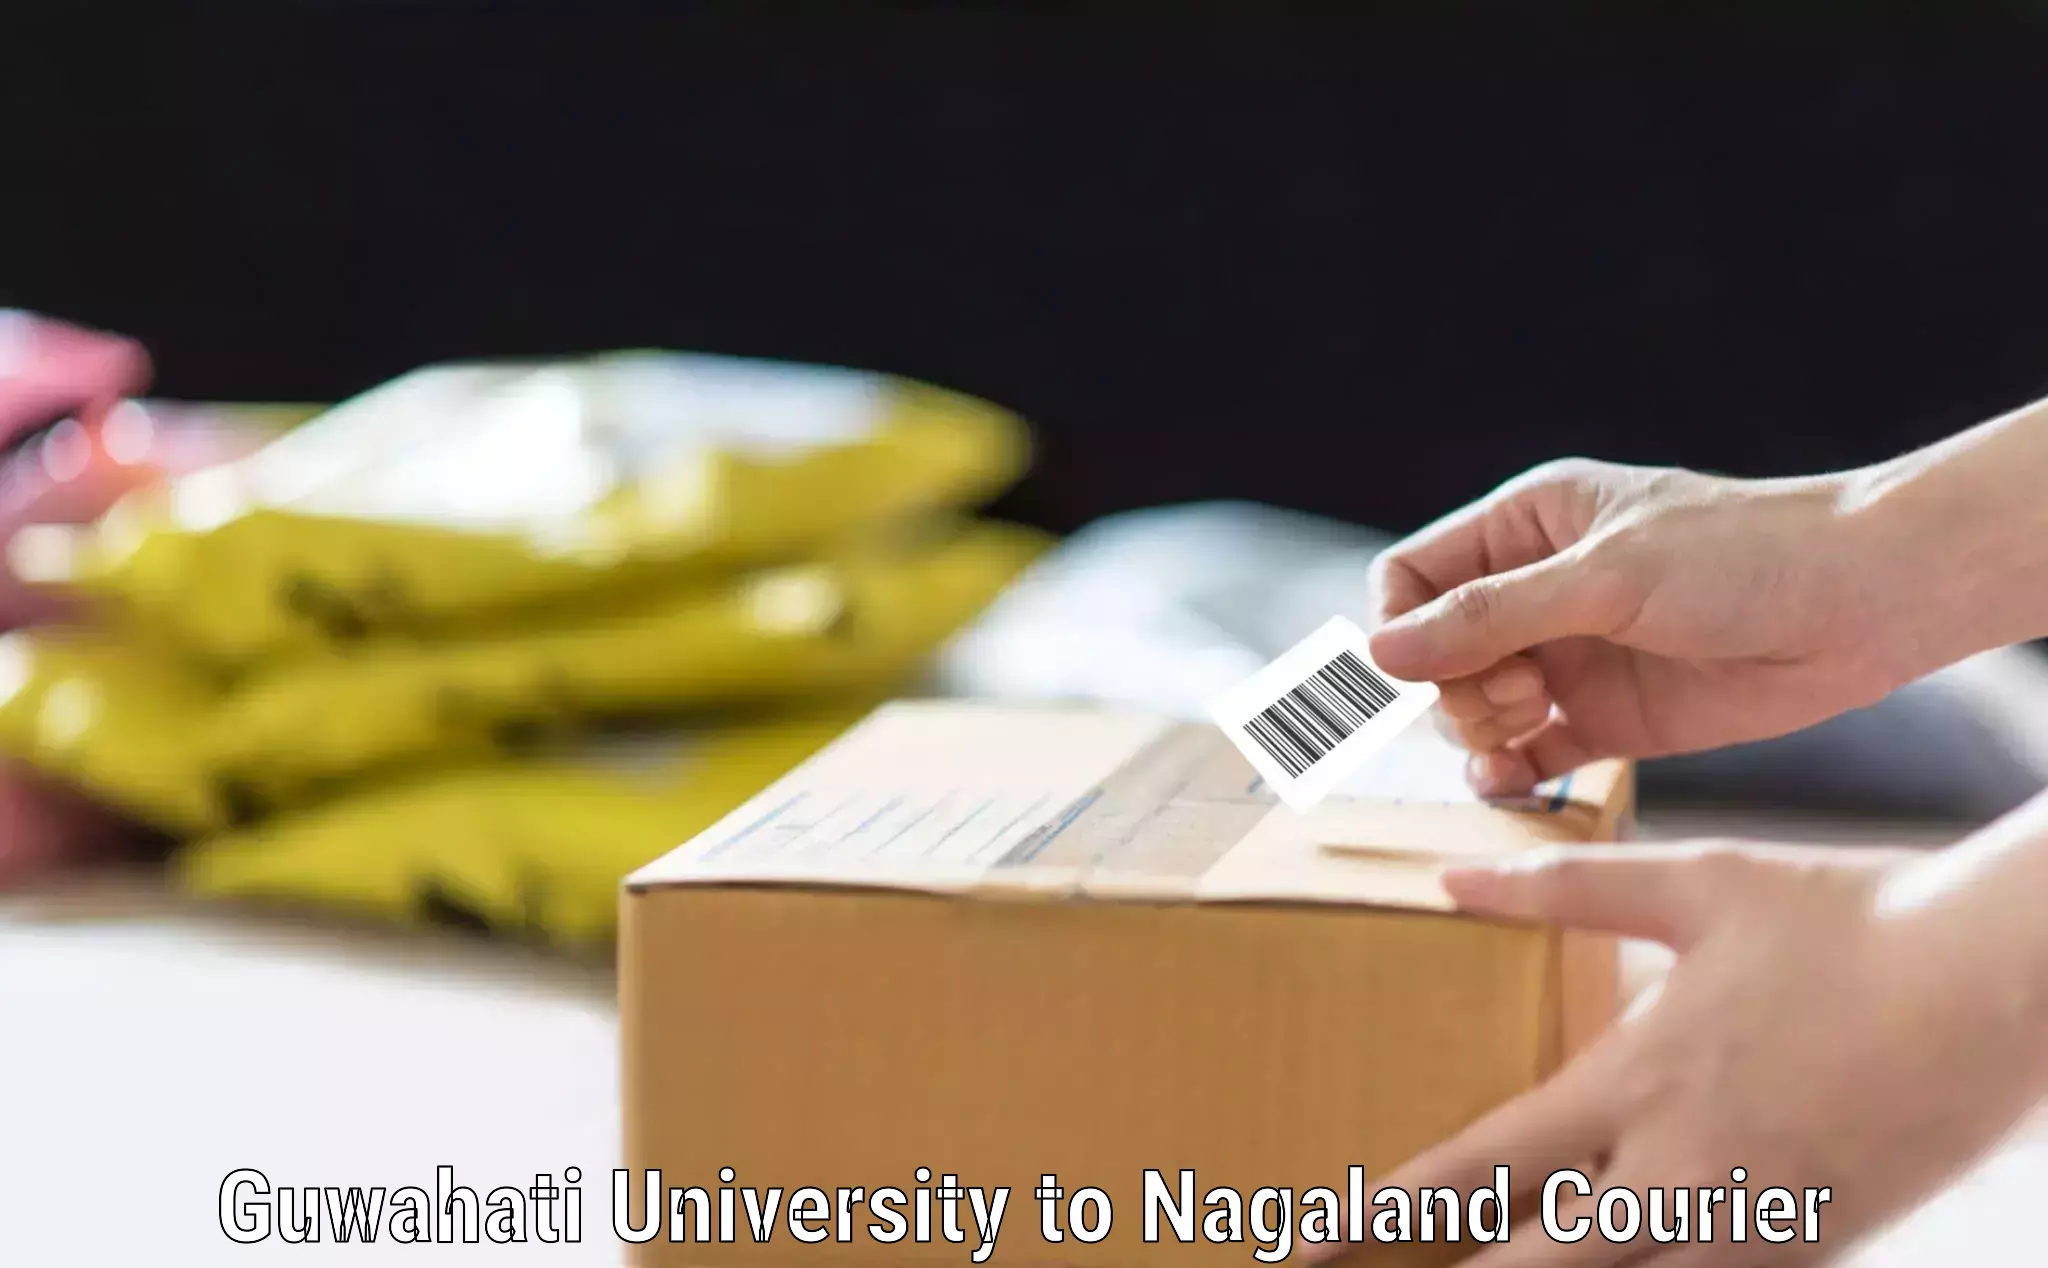 Luggage dispatch service Guwahati University to NIT Nagaland